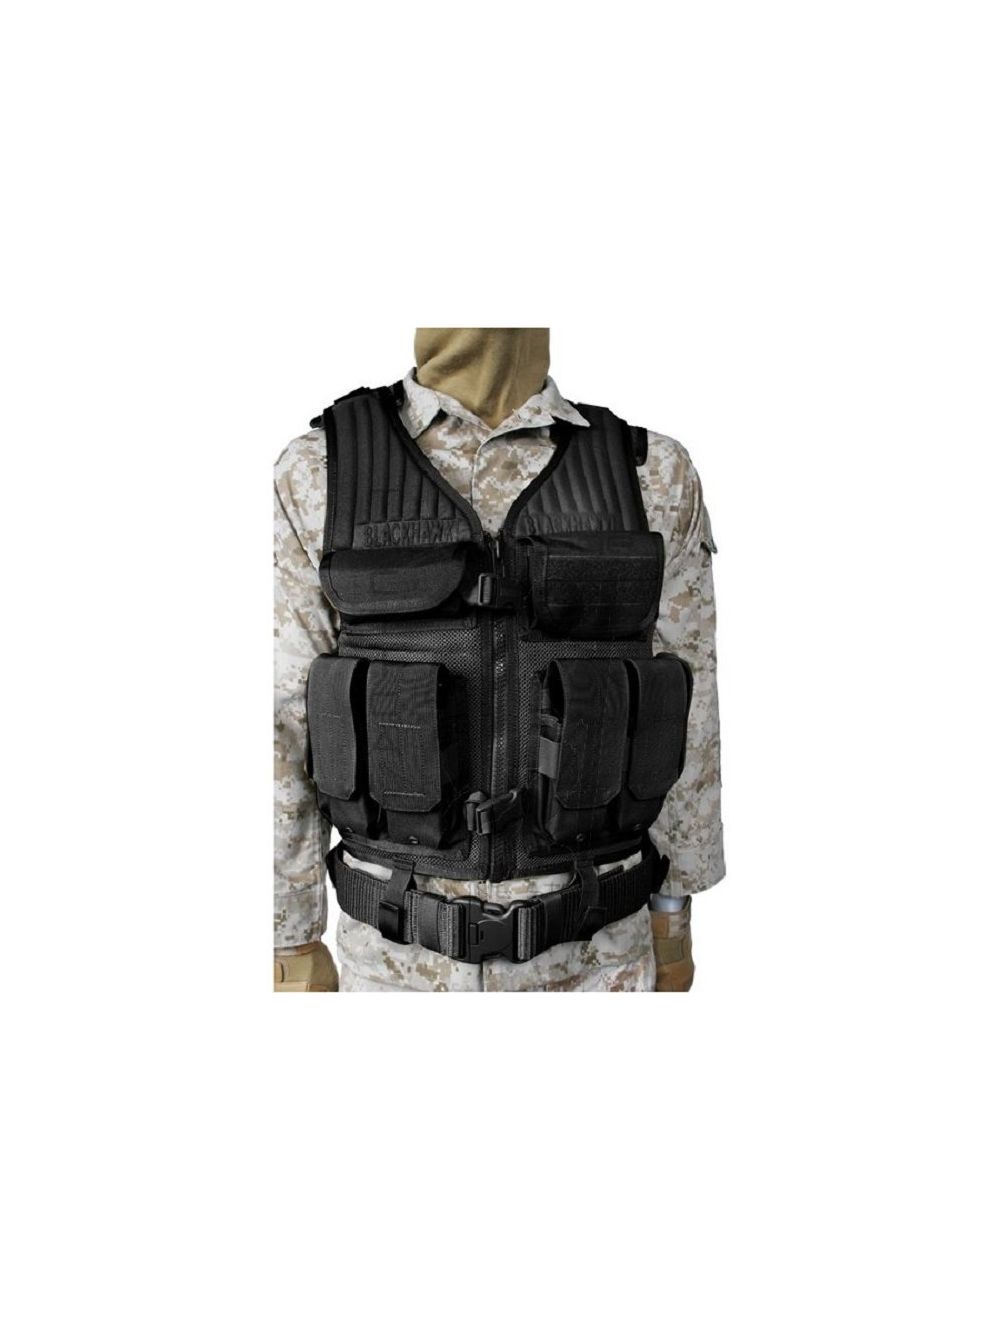 Omega Elite Tactical Vest